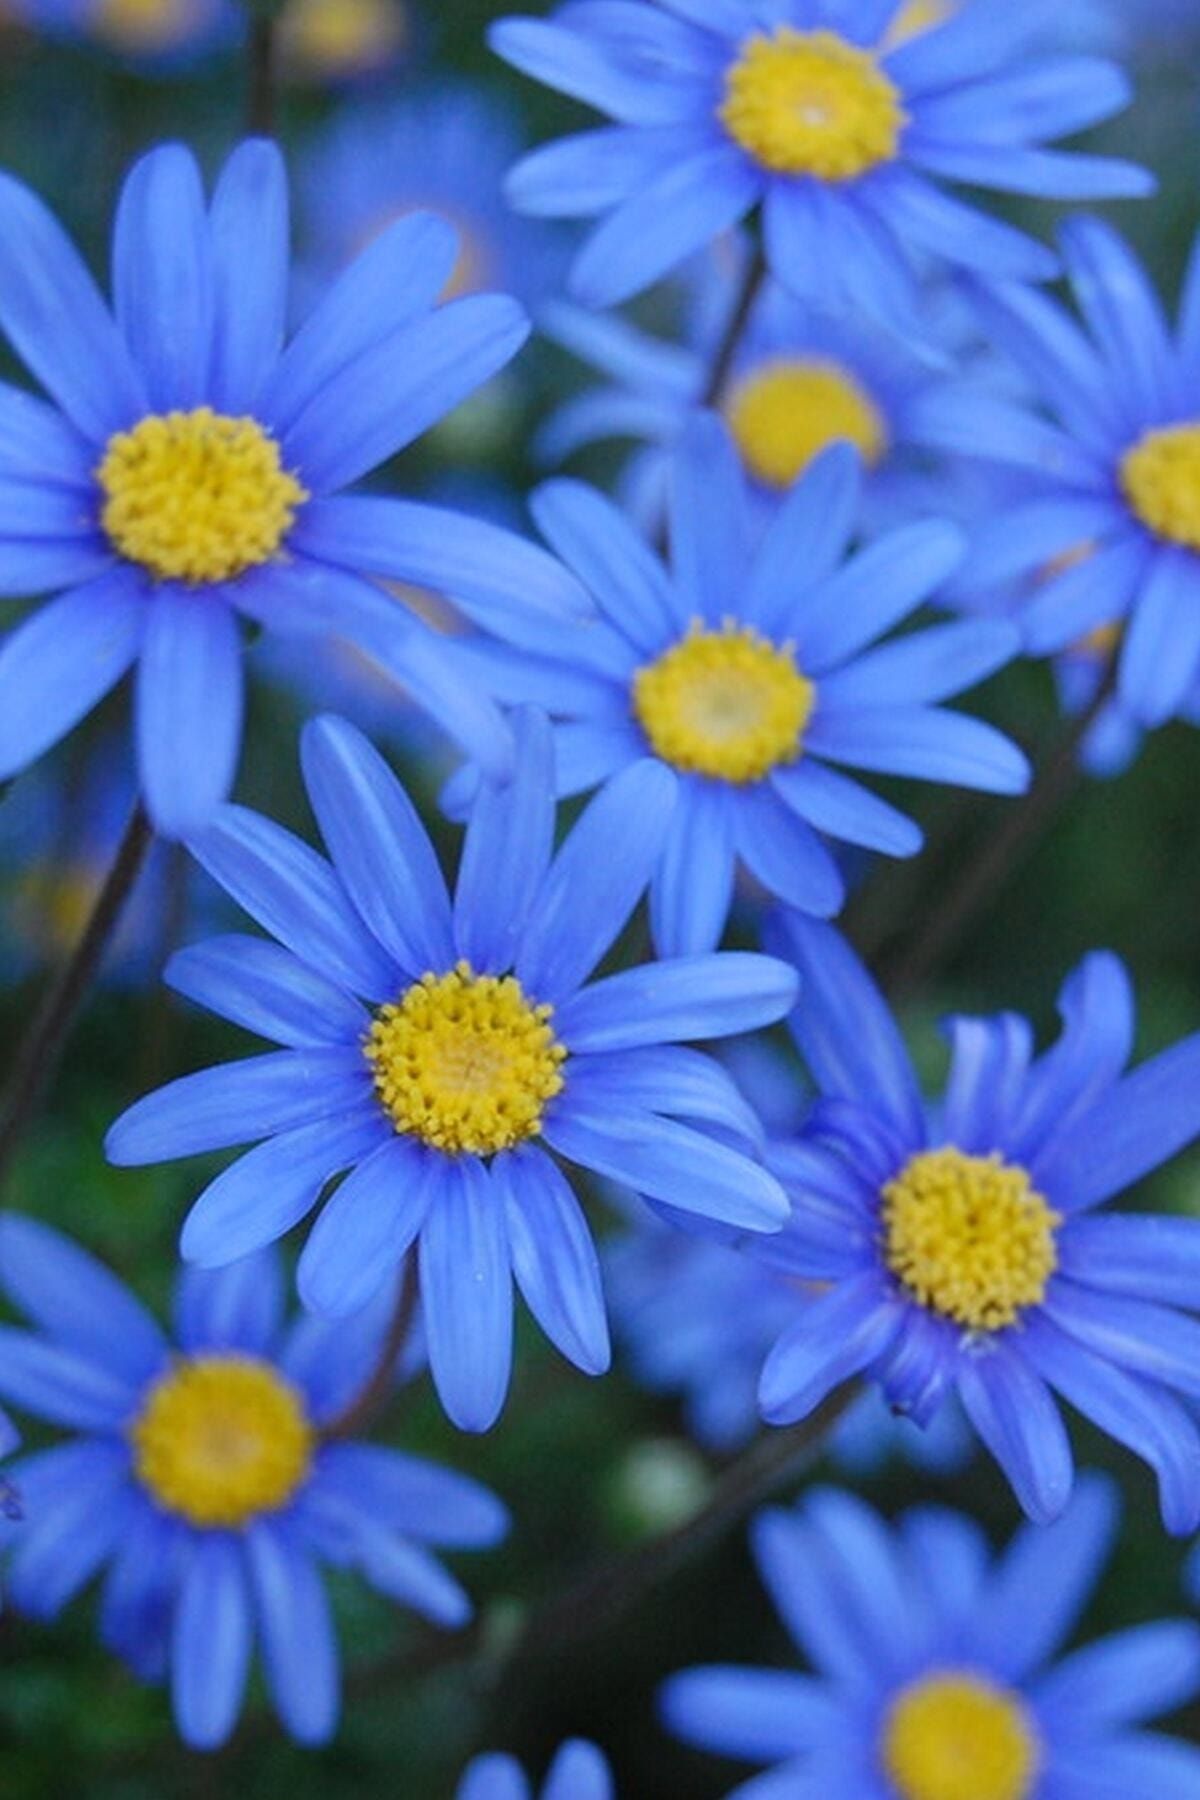 Köy Tohumları 20 Adet Nadir Bulunan Mavi Papatya Çiçeği Tohumu Mavi Kır Papatya Tohumu Hediye Tohumludur